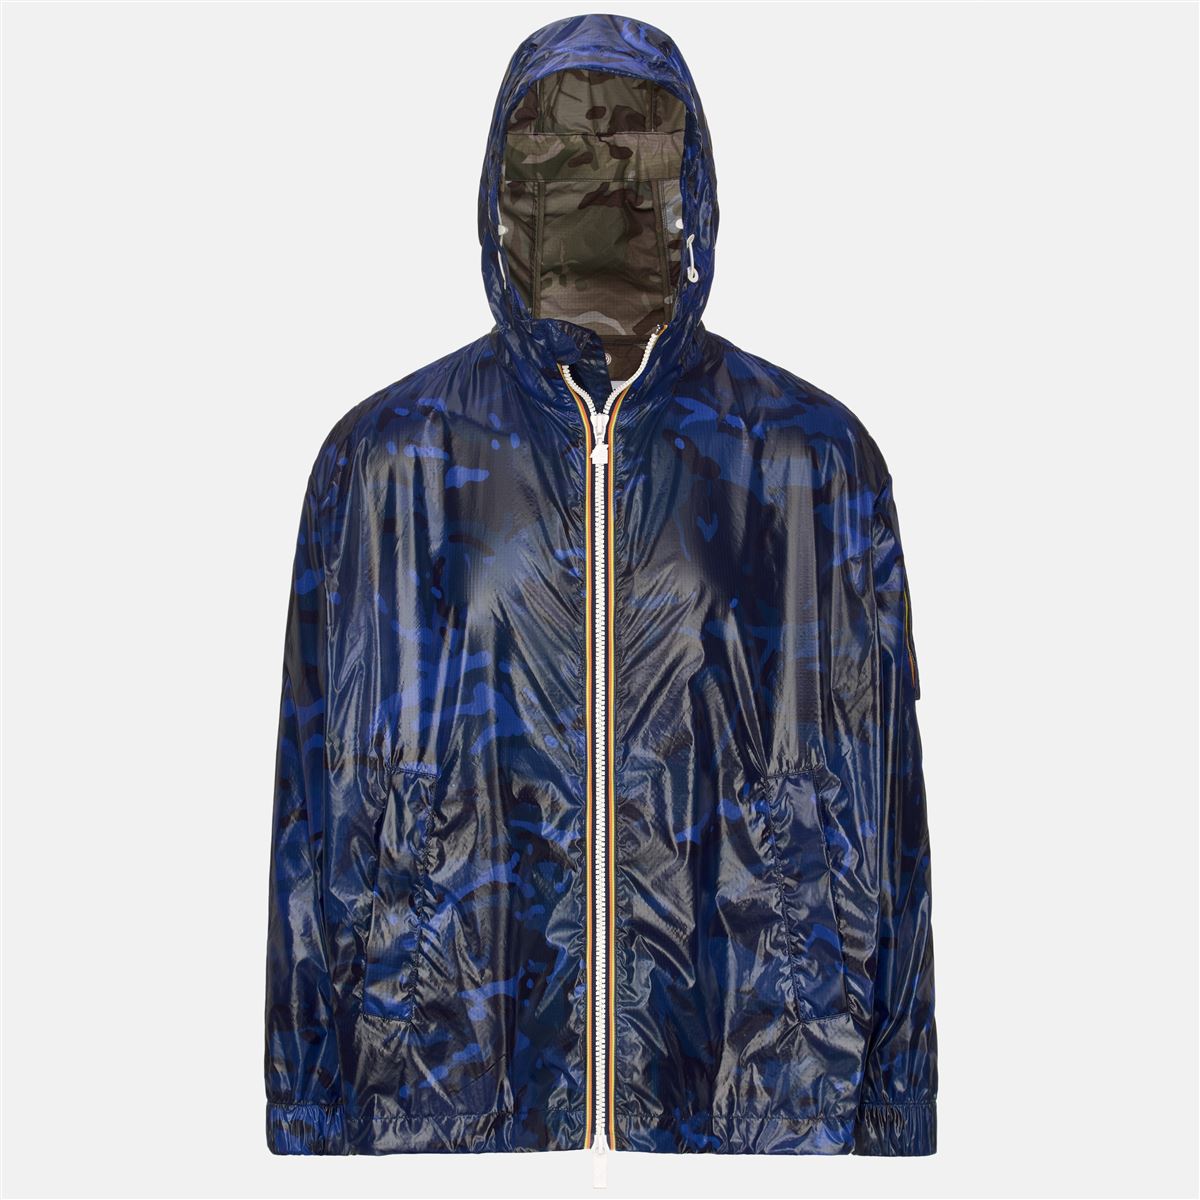 CLAUDEL CAMOU - Jacket - Polyamide - Unisex - Blue Camouflage